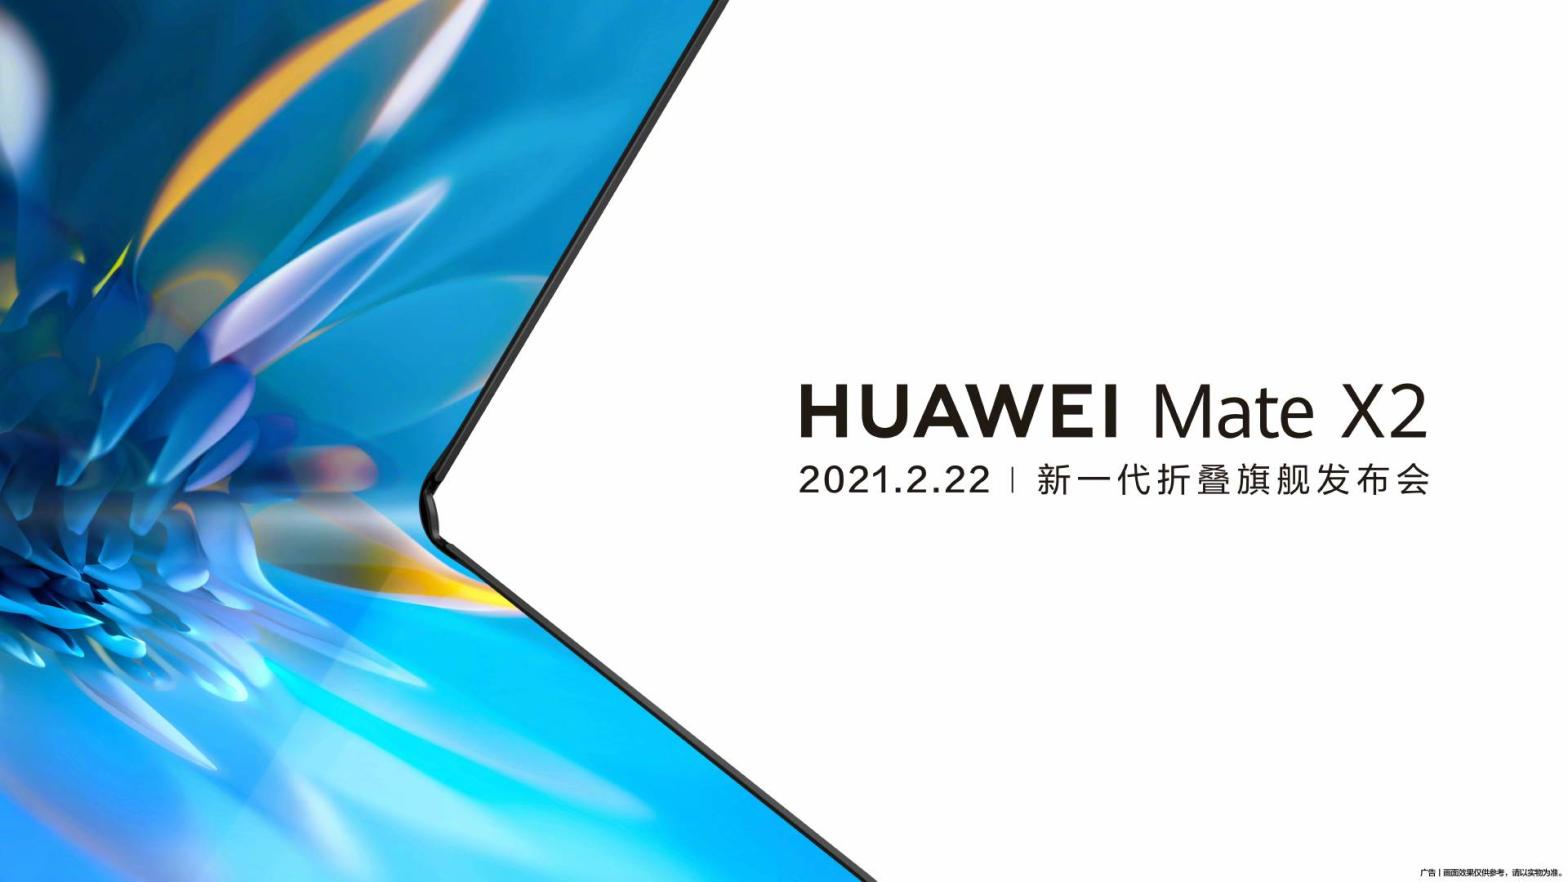 Image: Huawei